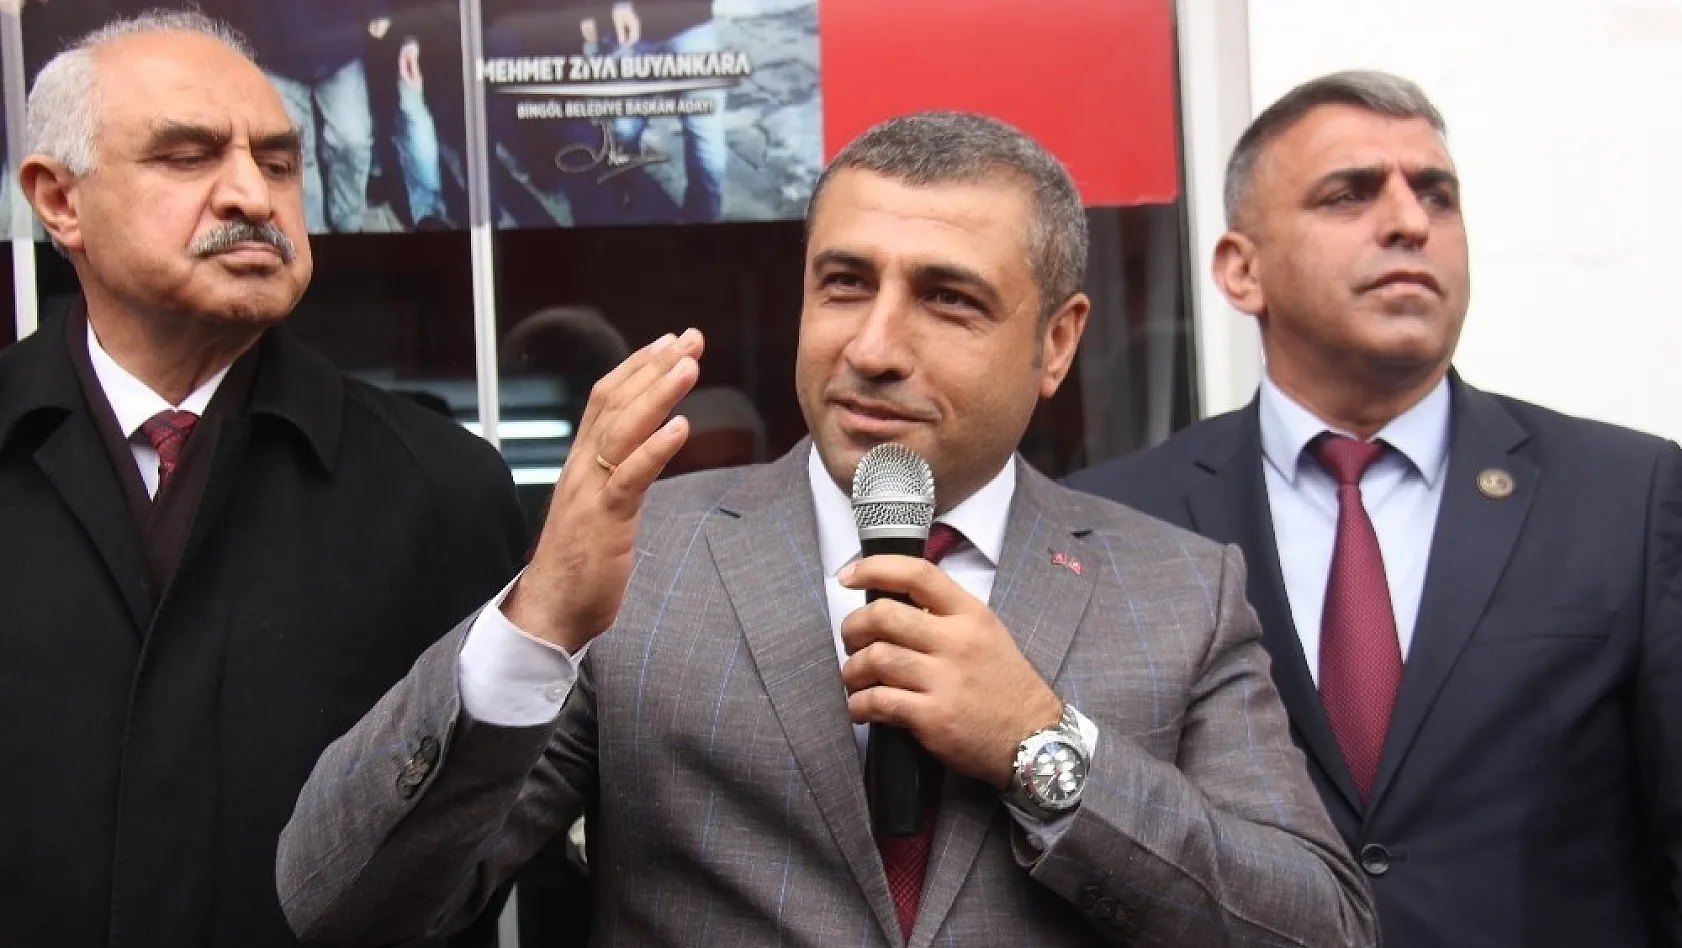 MHP'li Taşdoğan: 'Biz bu ülkede kardeşlik hukukunu bozdurmayacağız' 